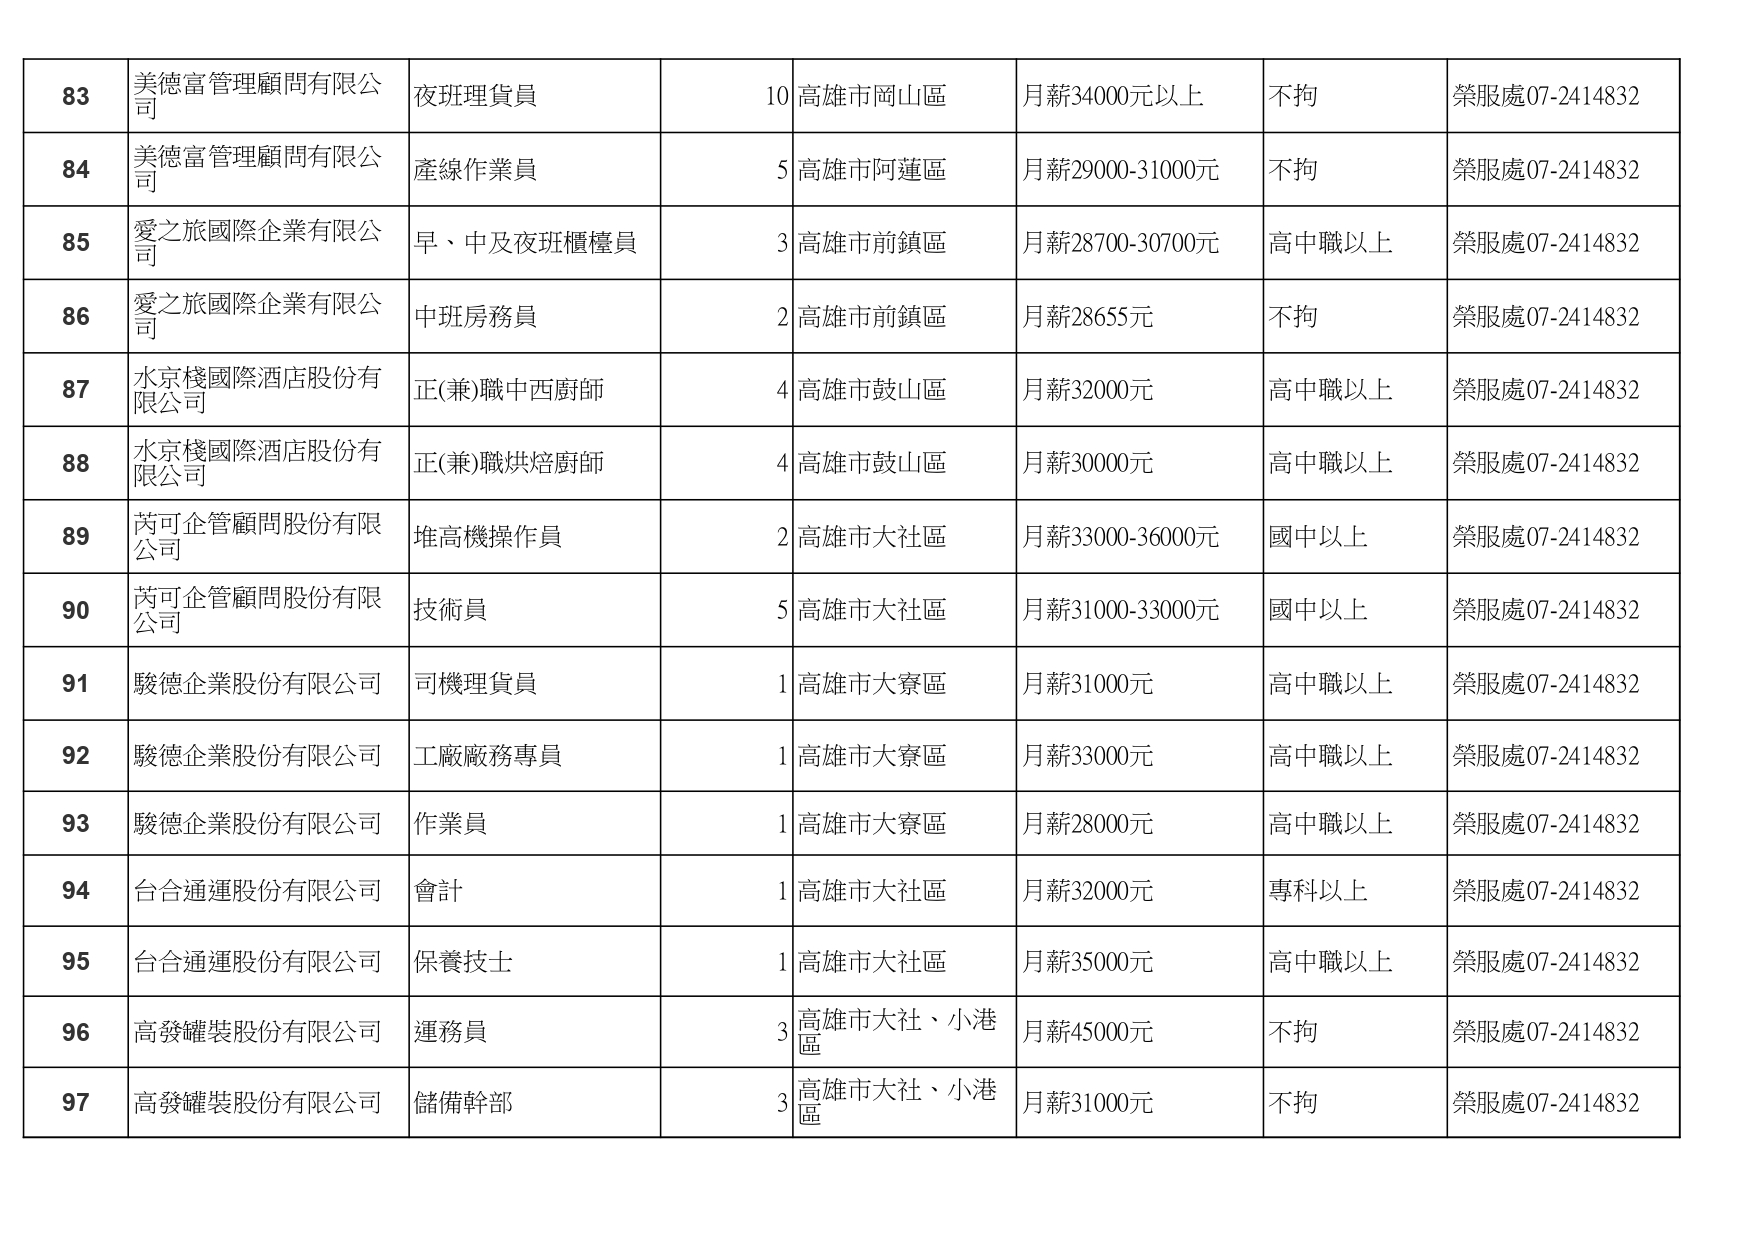 高雄榮服處-廠商職缺列表112.10.3_page-0007